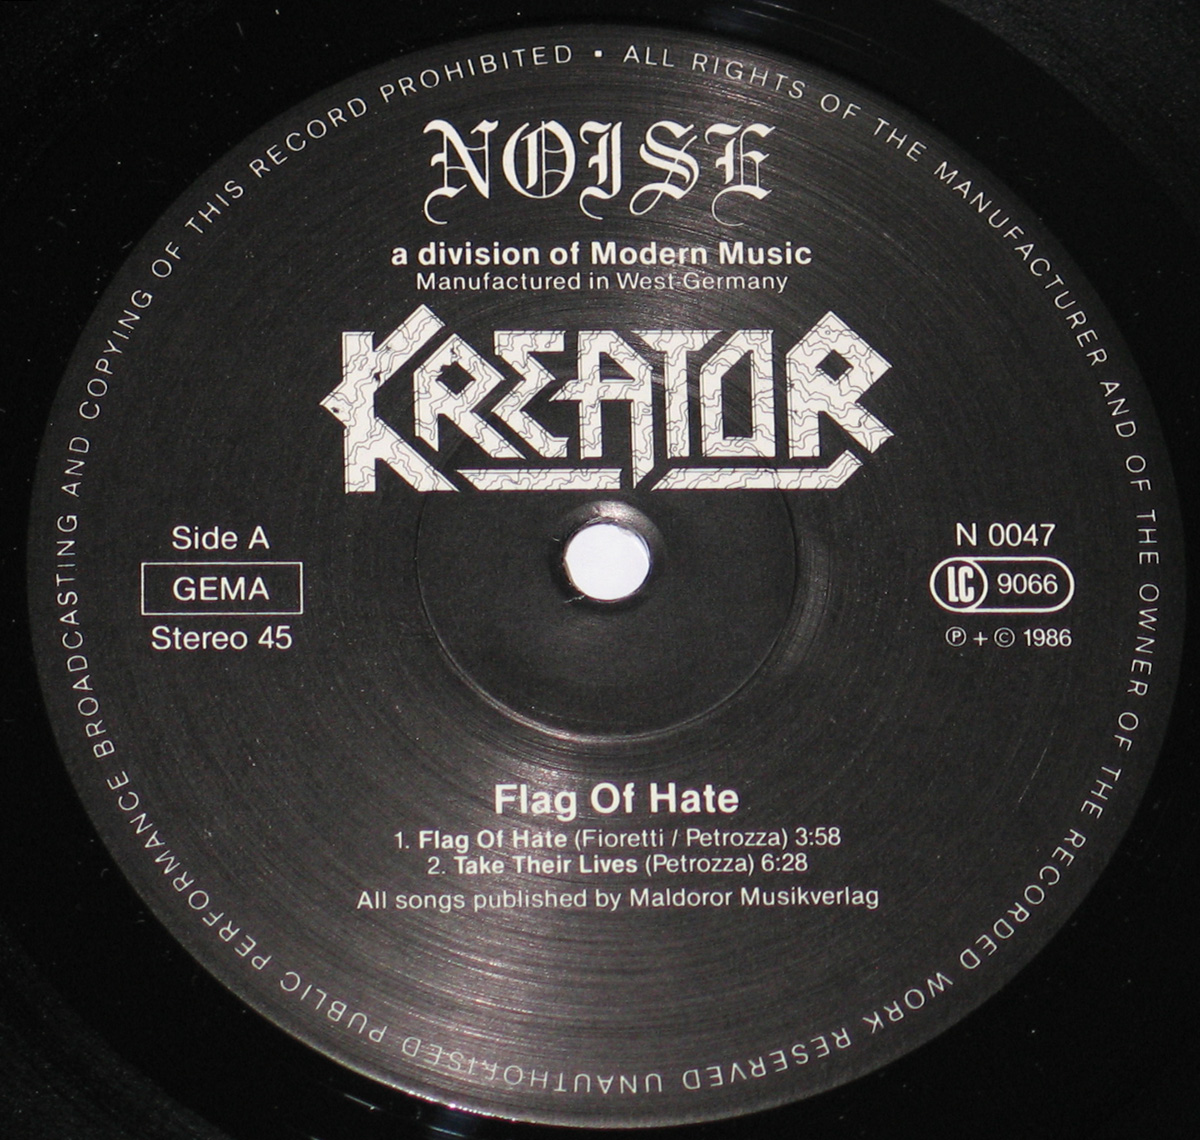 Kreator - Flag of Hate [EP] Album Lyrics